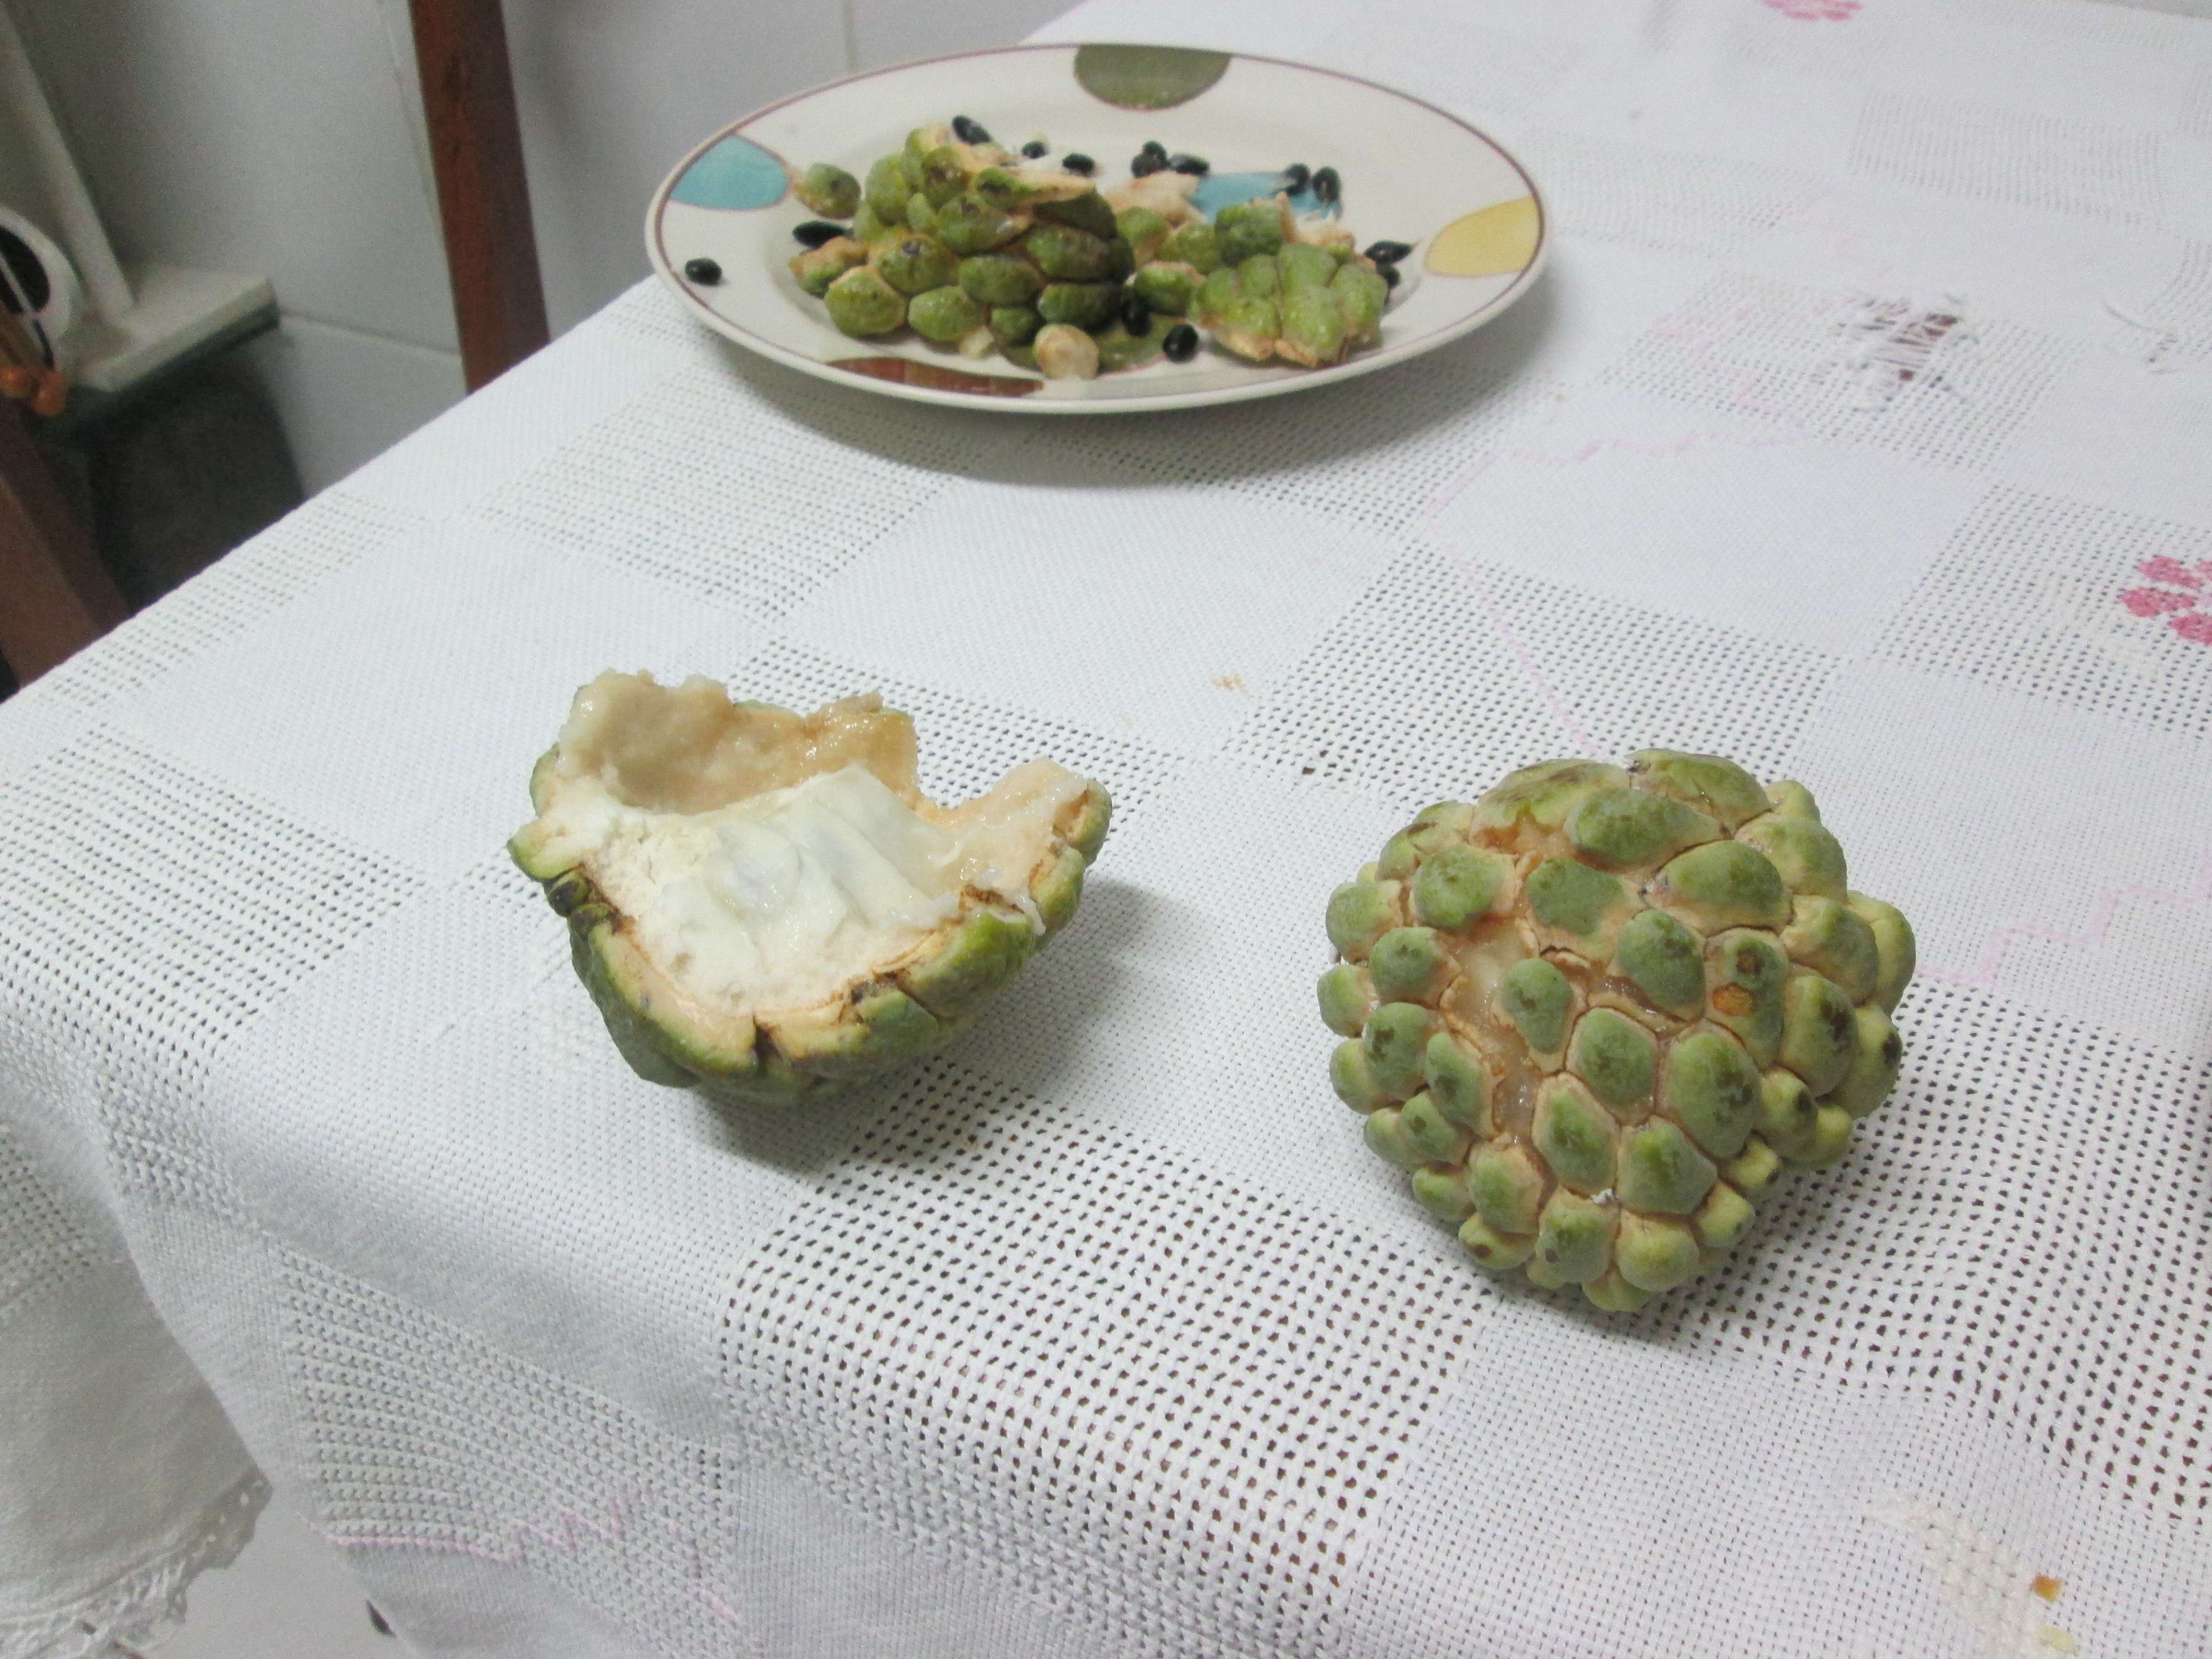 Strange fruit I discovered in Fortaleza